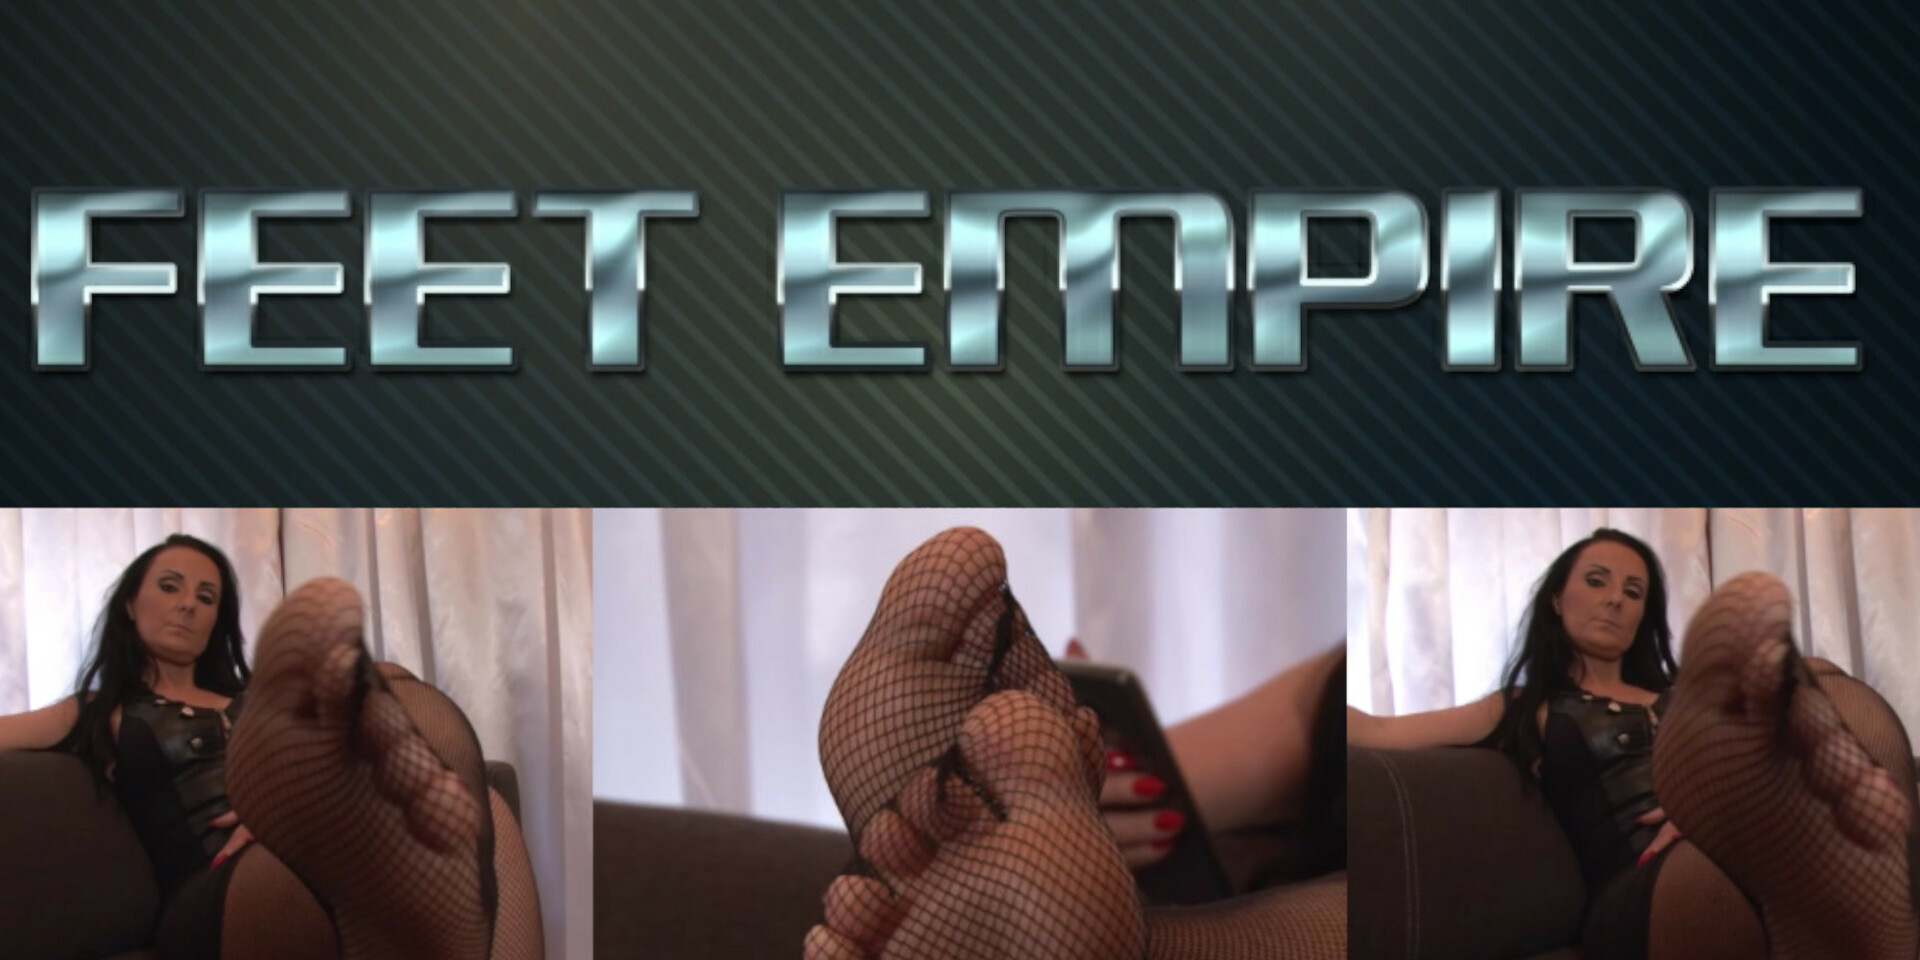 Enter Feet Empire